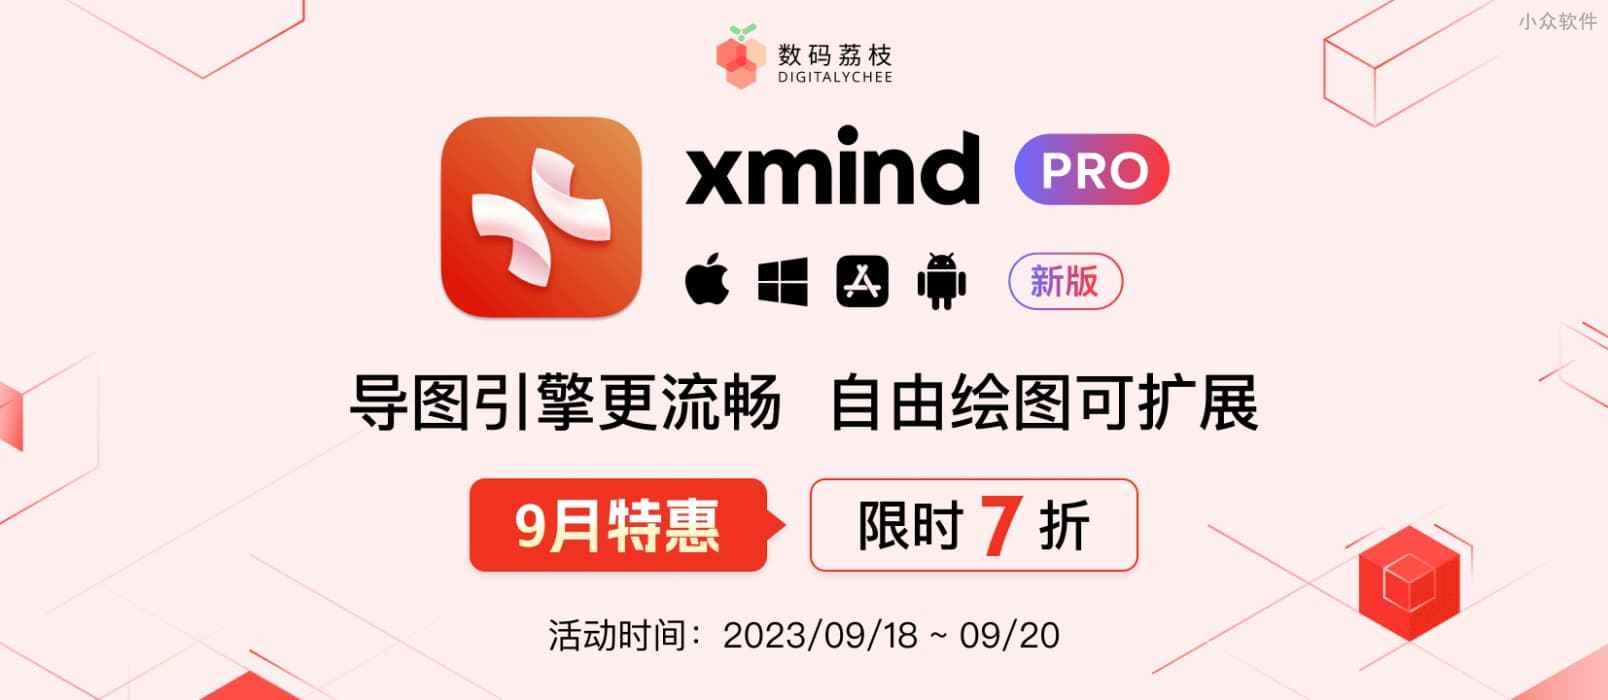 9 月特惠！Xmind Pro 2023 限时 7 折抢！